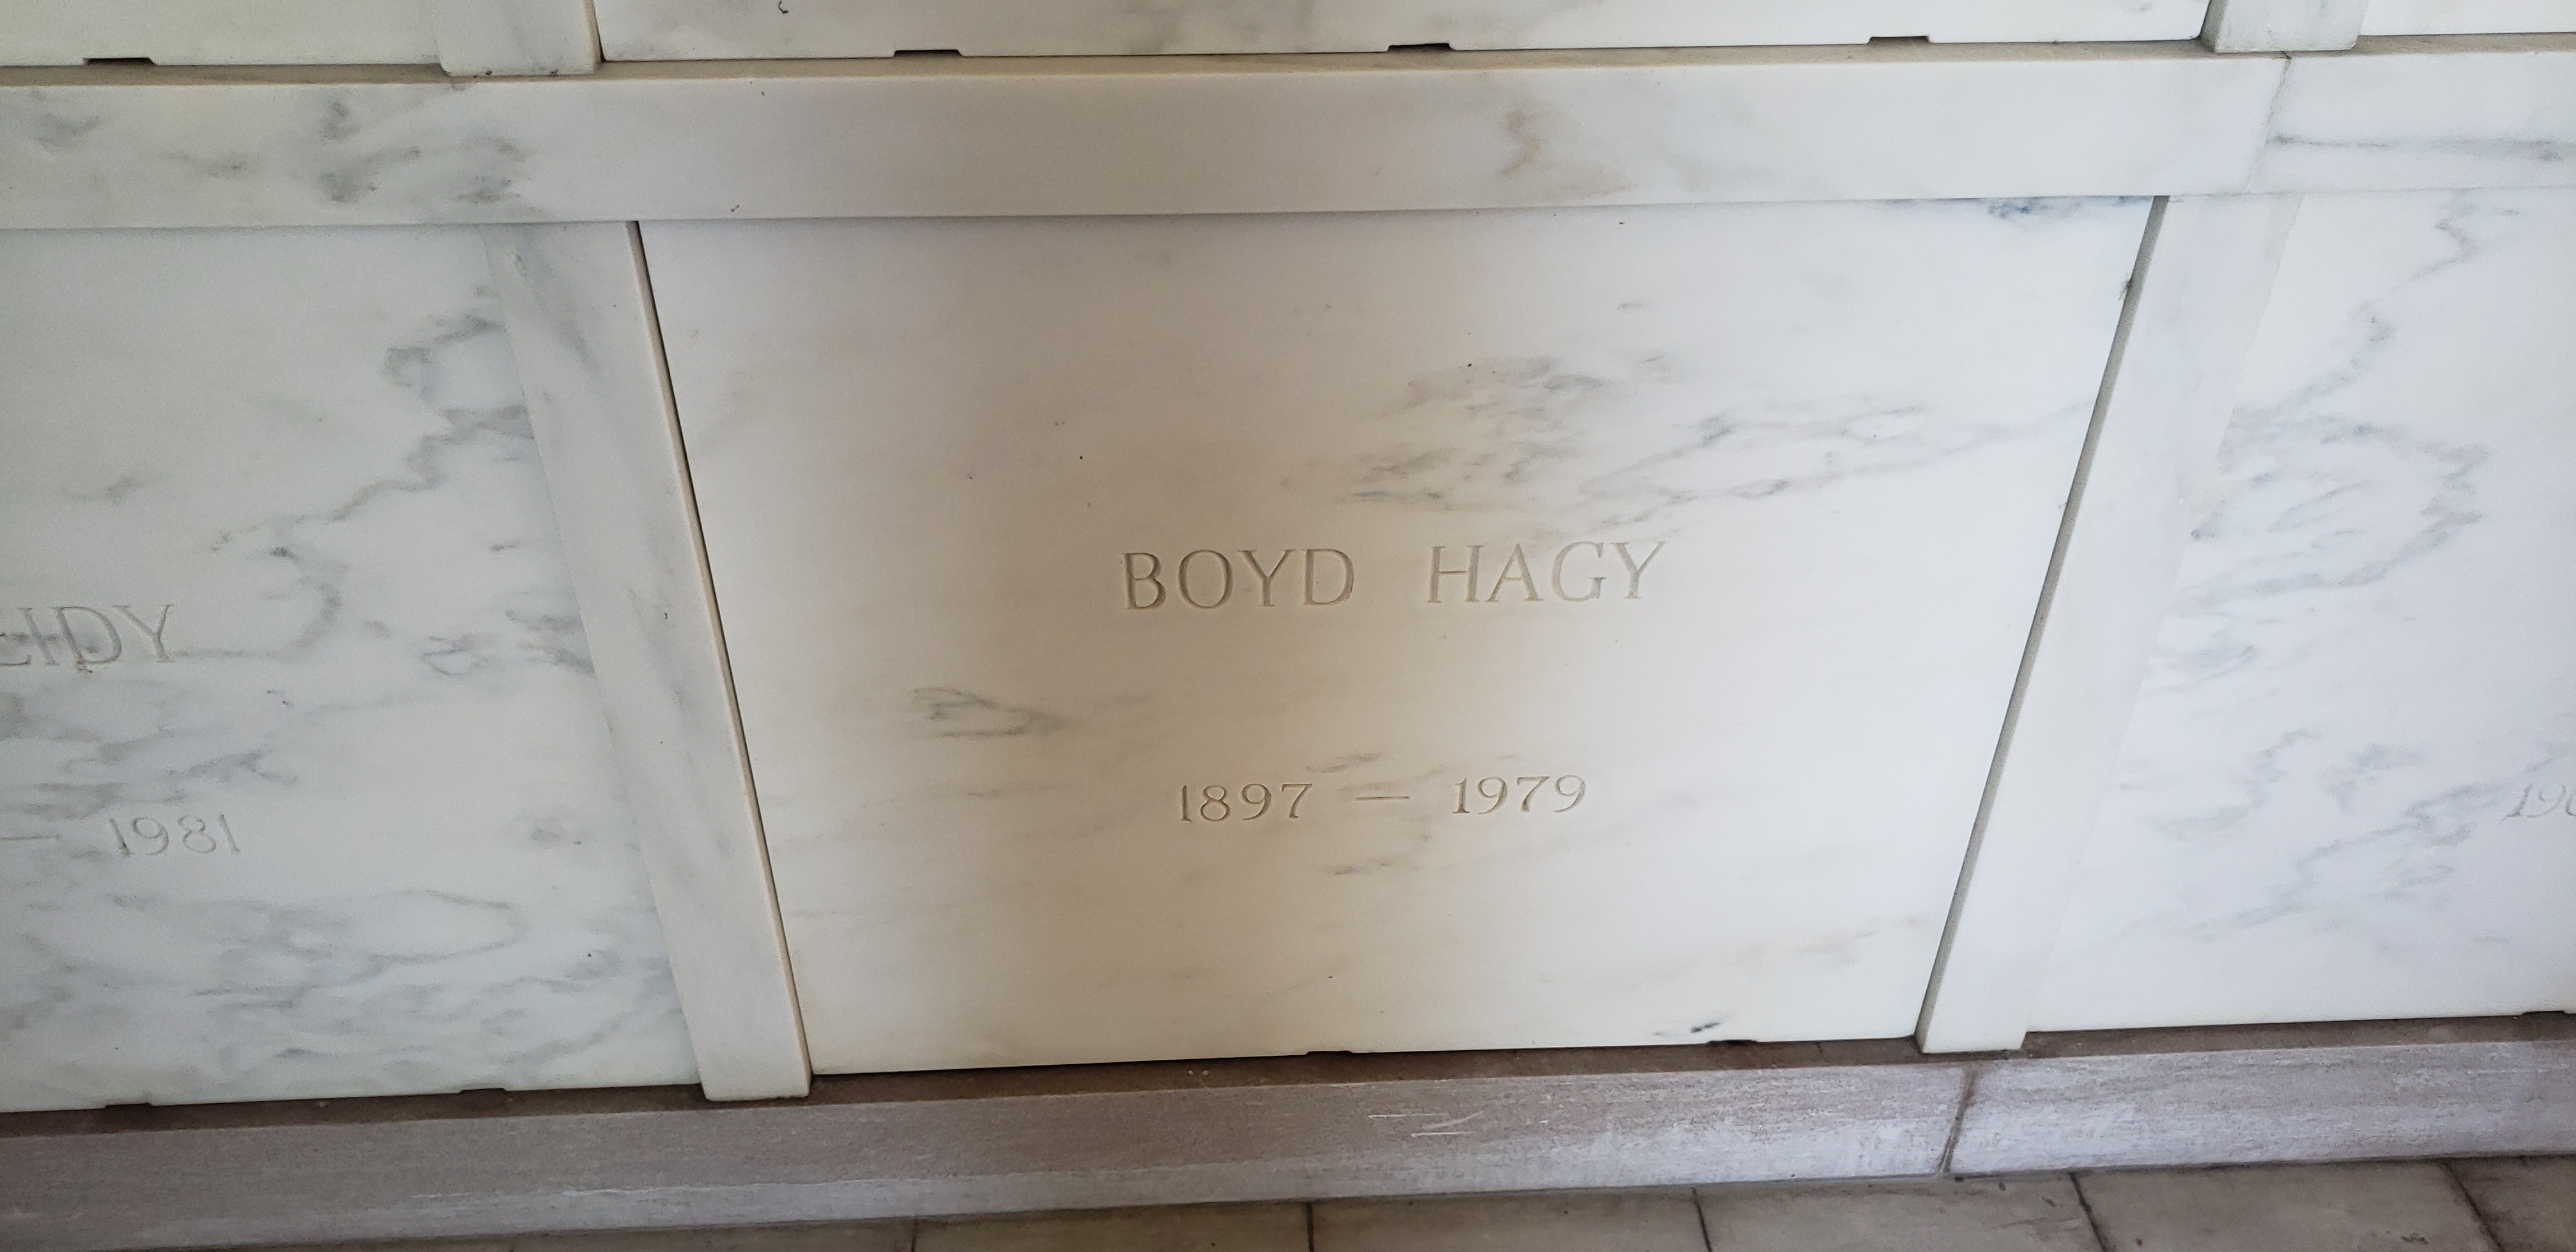 Boyd Hagy